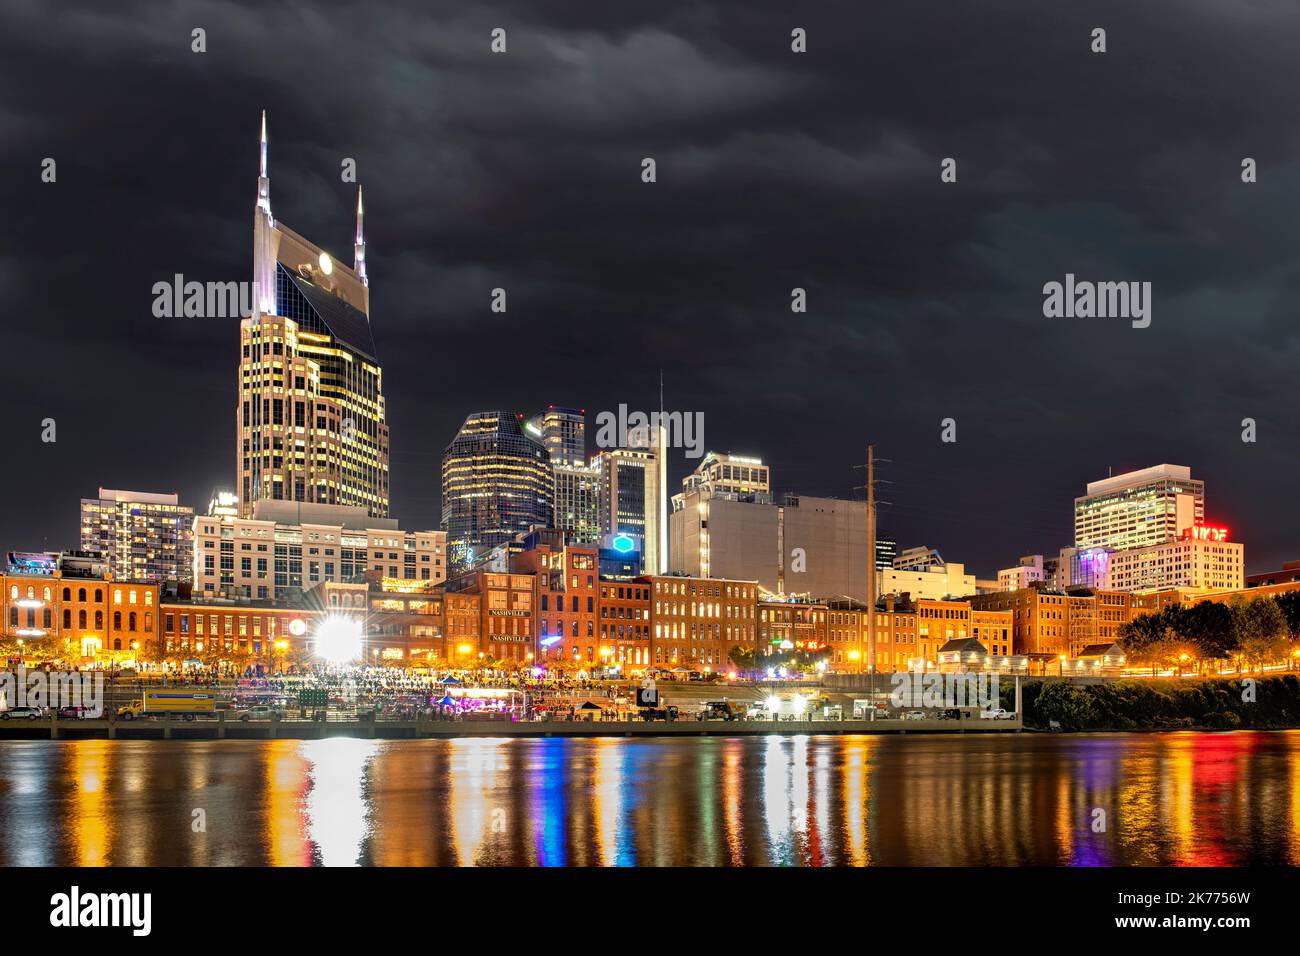 Il bellissimo mago del famoso centro di Nashville lungo il fiume mostra una vibrante attrazione turistica sul lungomare di notte. Foto Stock